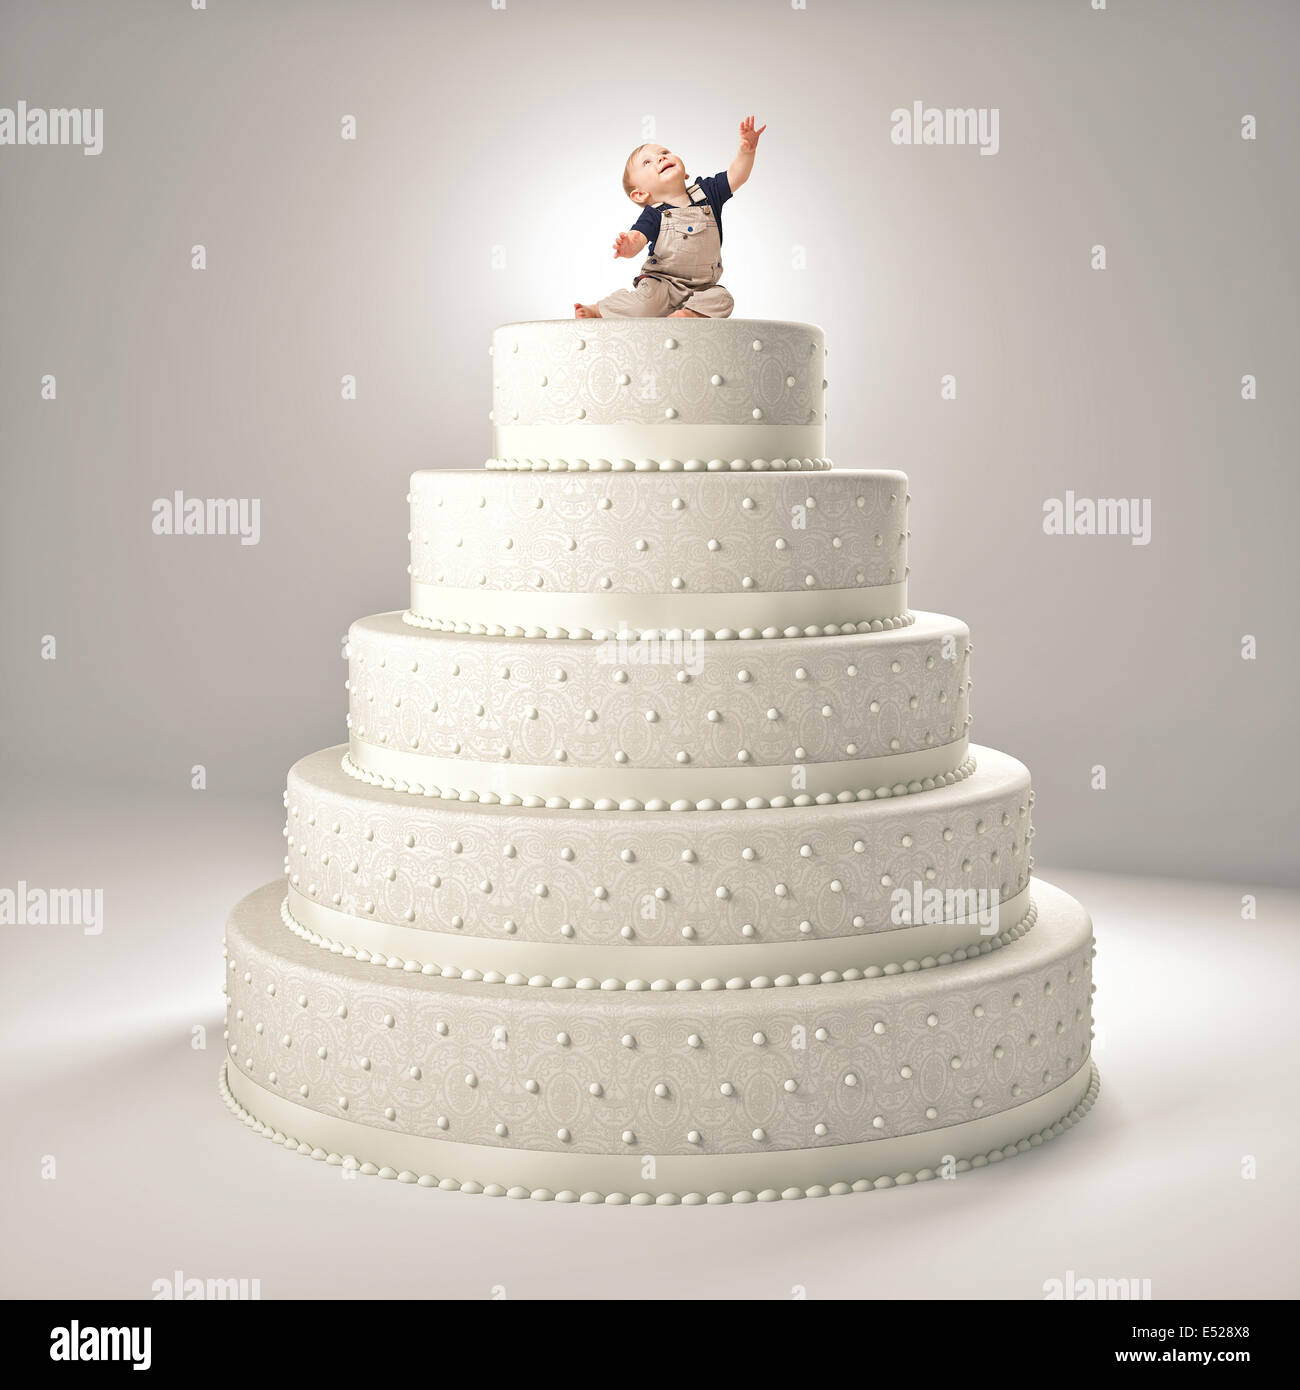 Petit enfant mignon sur le dessus du gâteau Banque D'Images